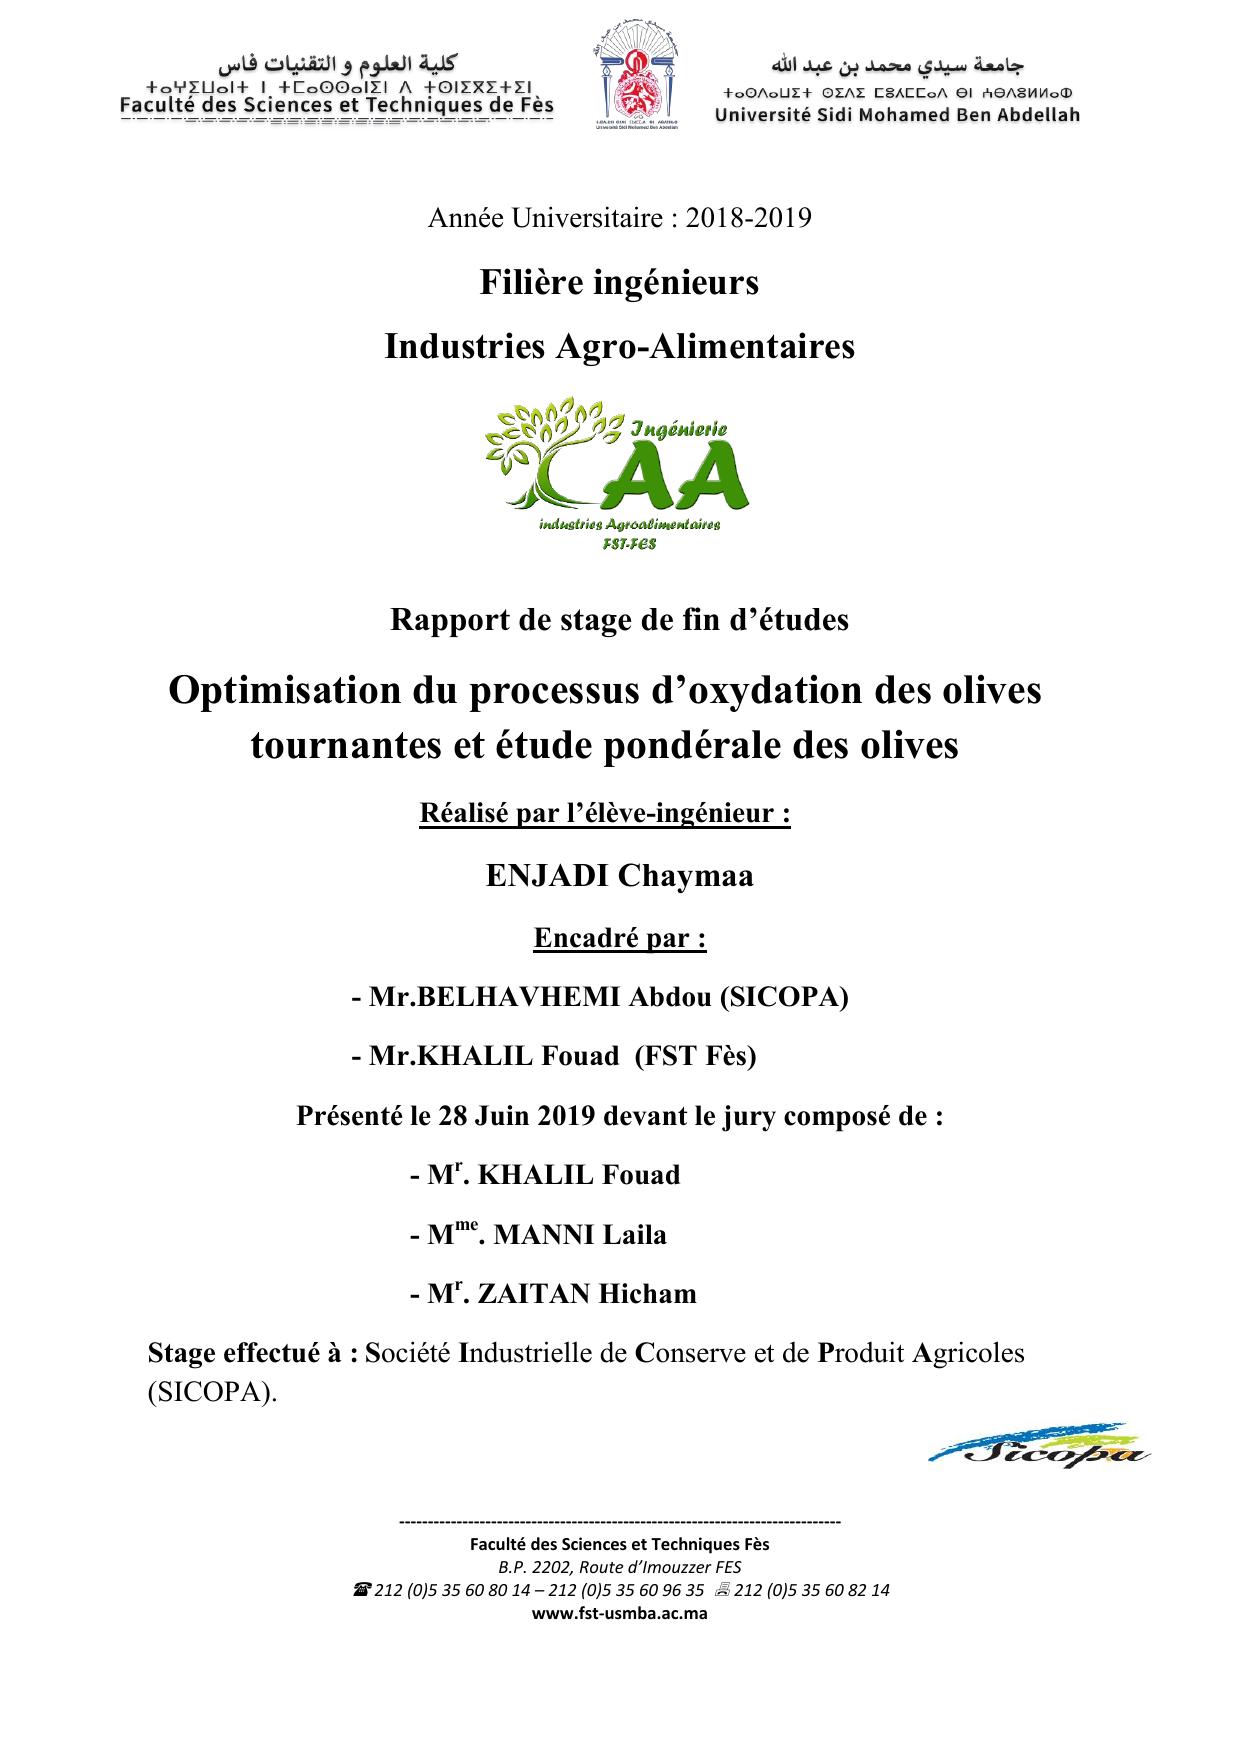 Optimisation du processus d’oxydation des olives tournantes et étude pondérale des olives